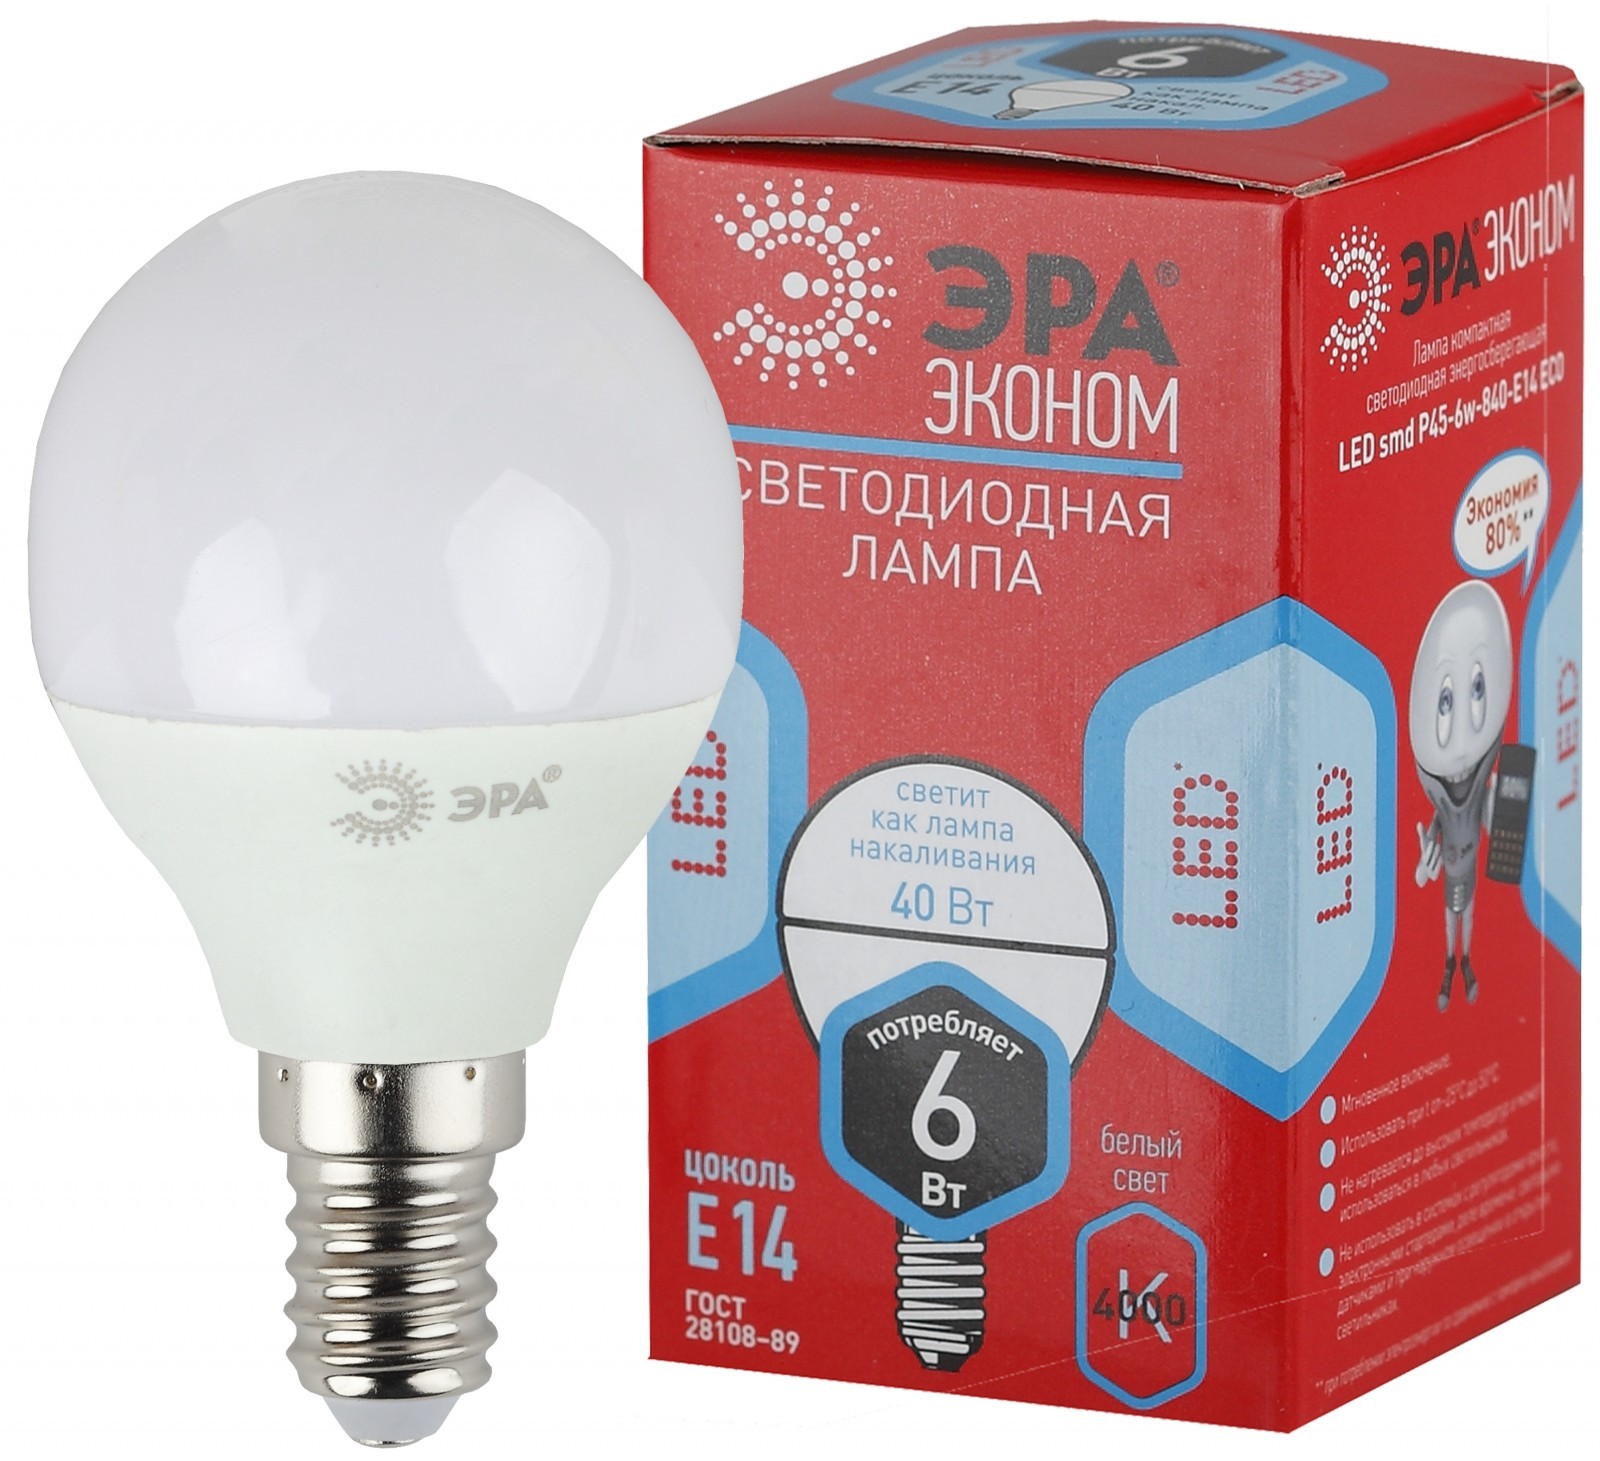 Лампа Эра LED smd P45-6w-840-E27 ECO - фото - 1